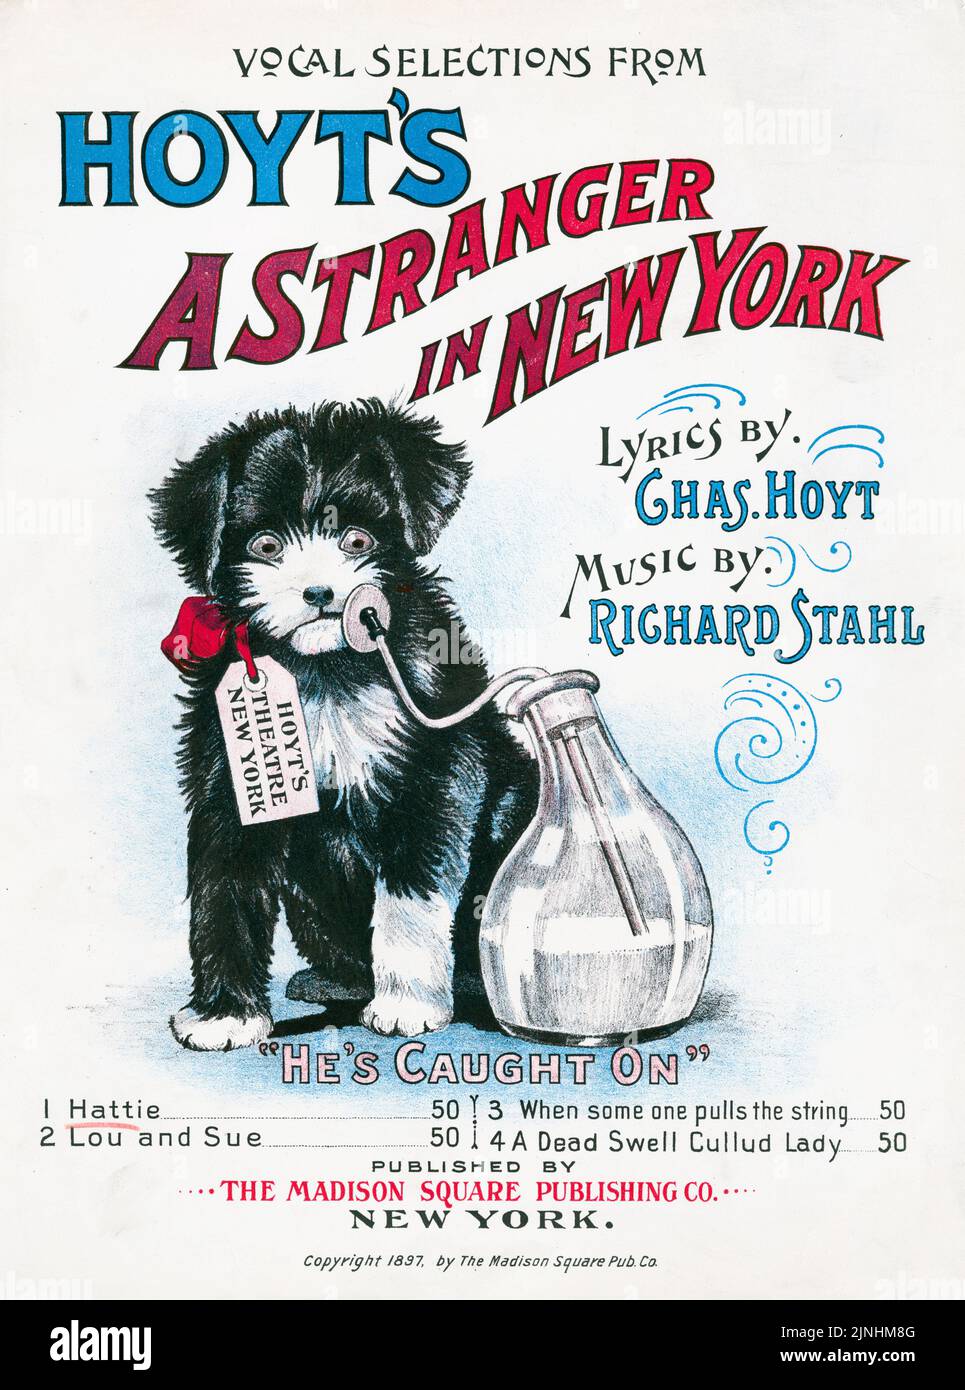 Hoyt's A Stranger in New York (1897) selezioni vocali, testi di Charles Hoyt, Musica di Richard Stahl, pubblicato dalla Madison Square Publishing Company. Copertina per musica spartiti. Foto Stock